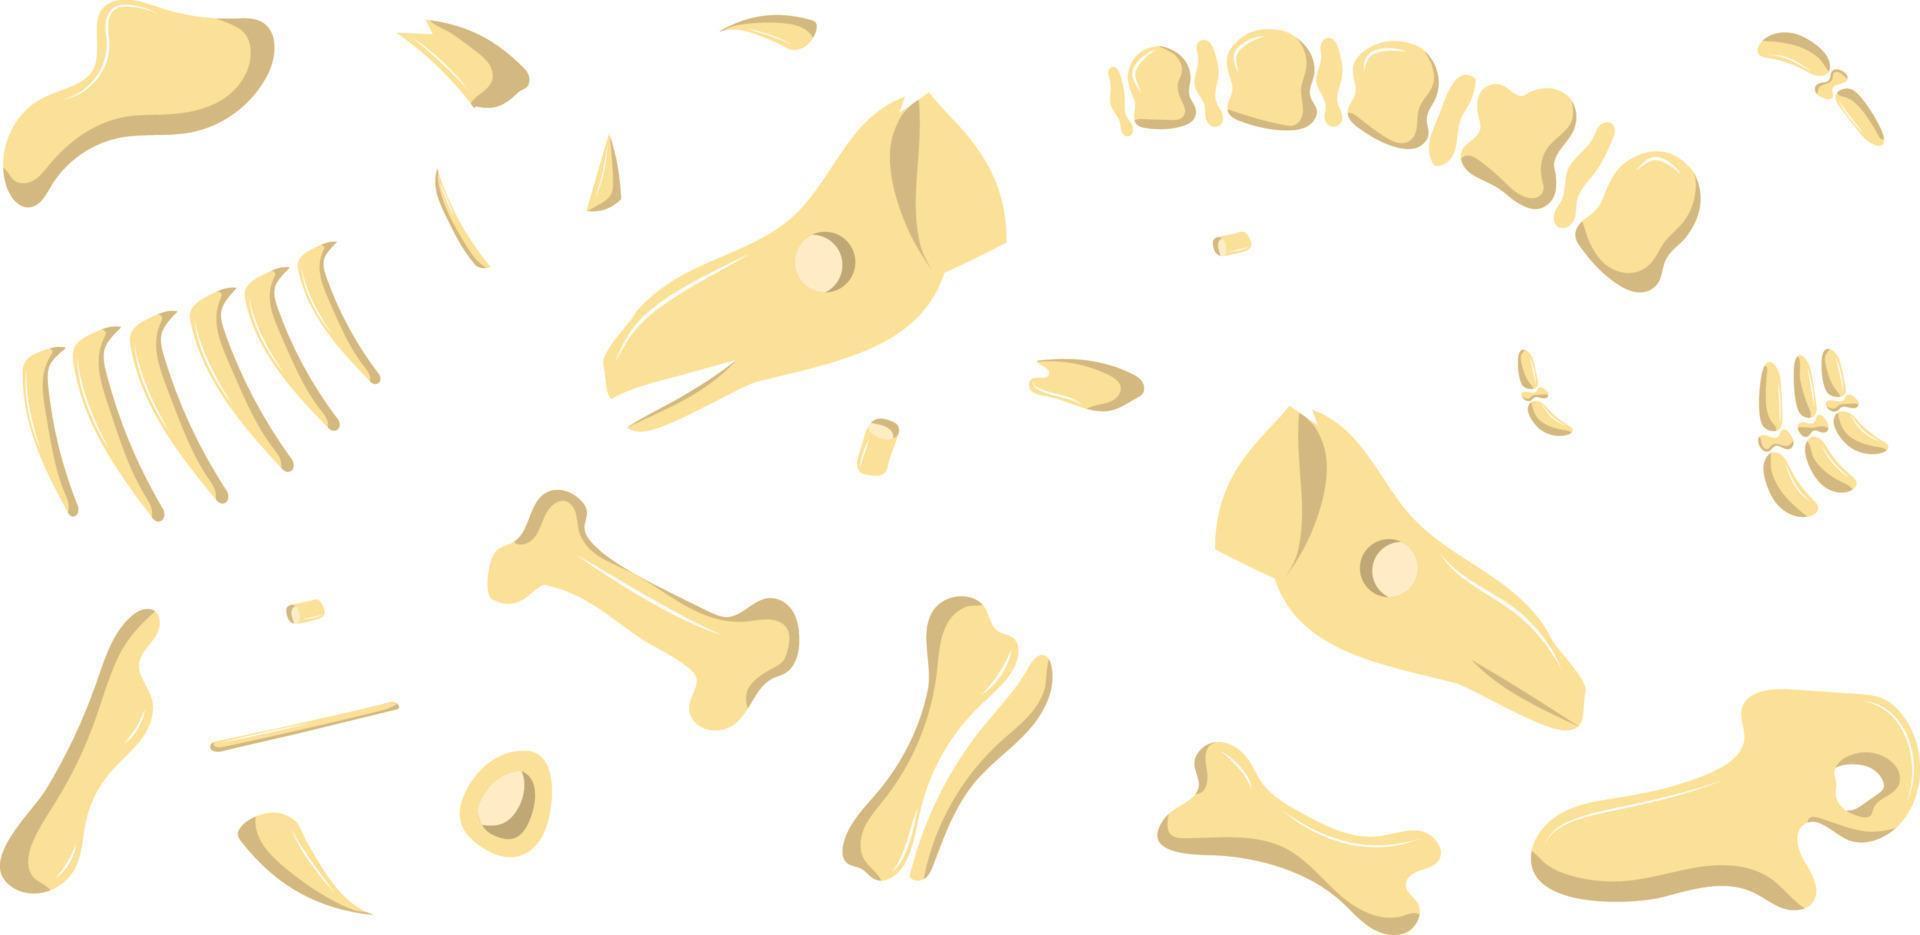 ossos de dinossauro são divididos em partes vetor